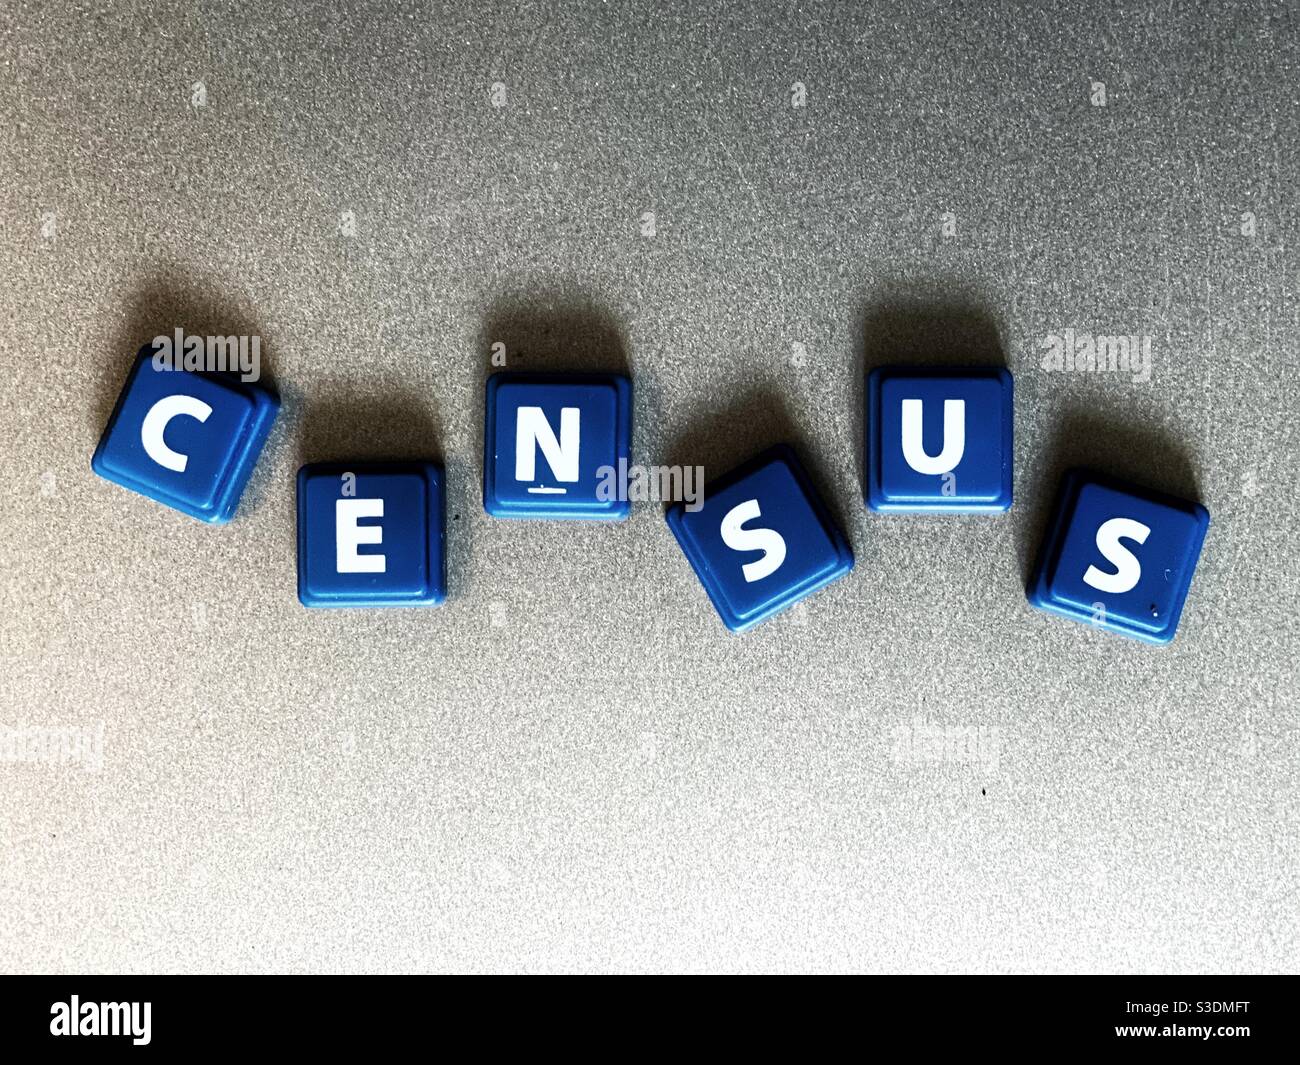 El censo del Reino Unido es el 21 2021 de marzo. La palabra censo se espeló usando azulejos. Foto de stock